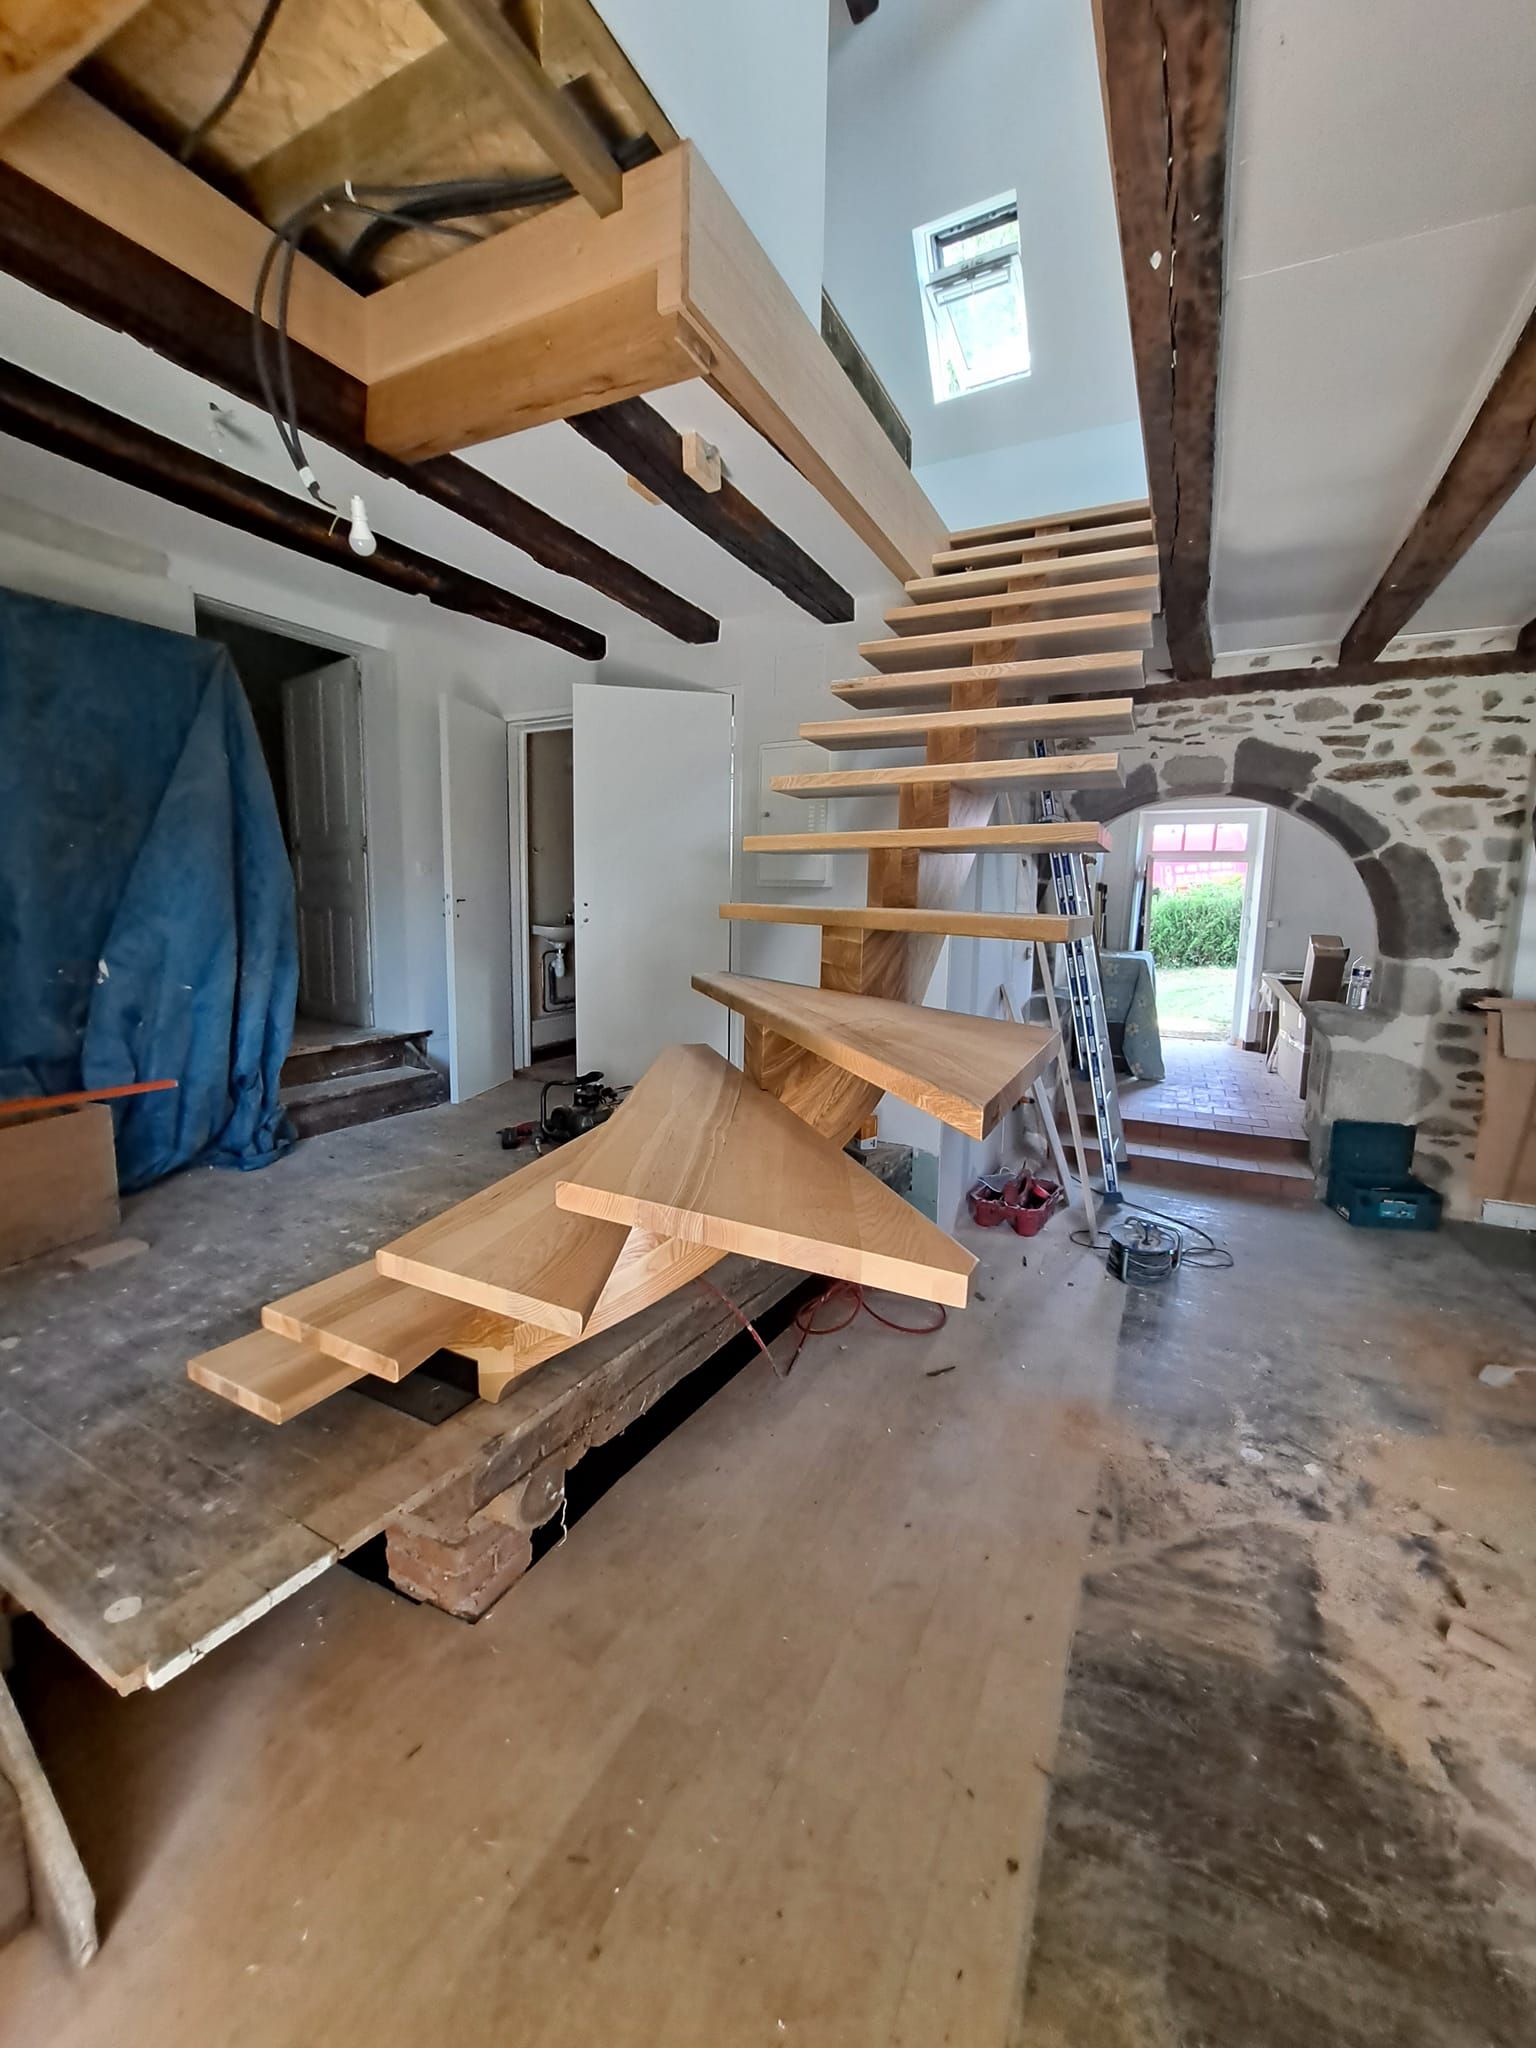 Maison avec une charpente et un escalier de bois